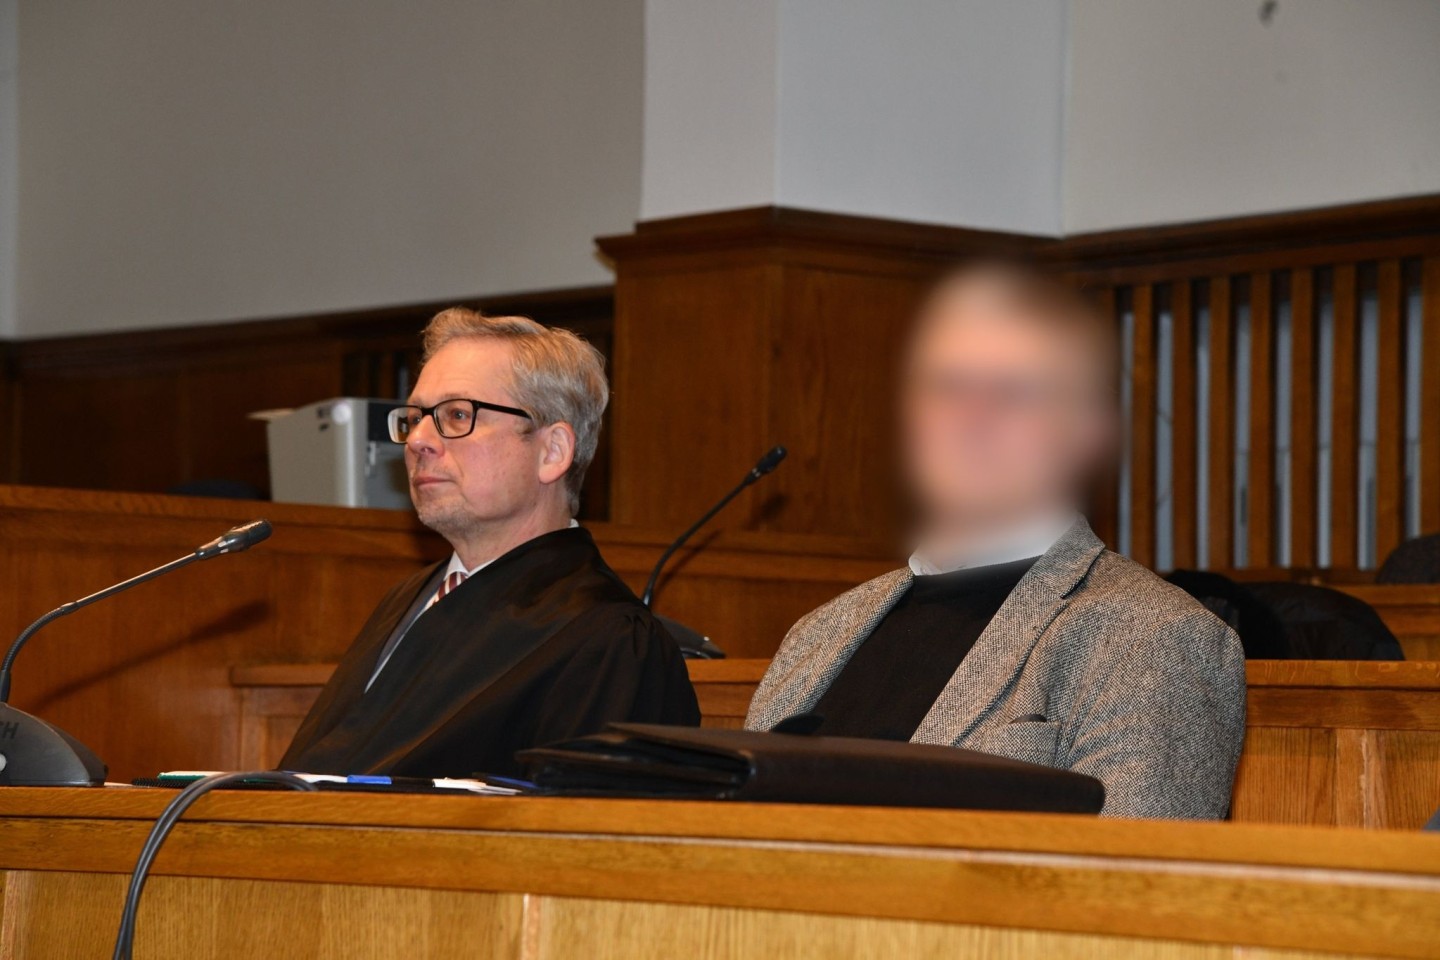 Der Angeklagte (r) neben seinem Anwalt im Landgericht Saarbrücken. Er muss sich wegen des Verdachts der sexuellen Nötigung verantworten.